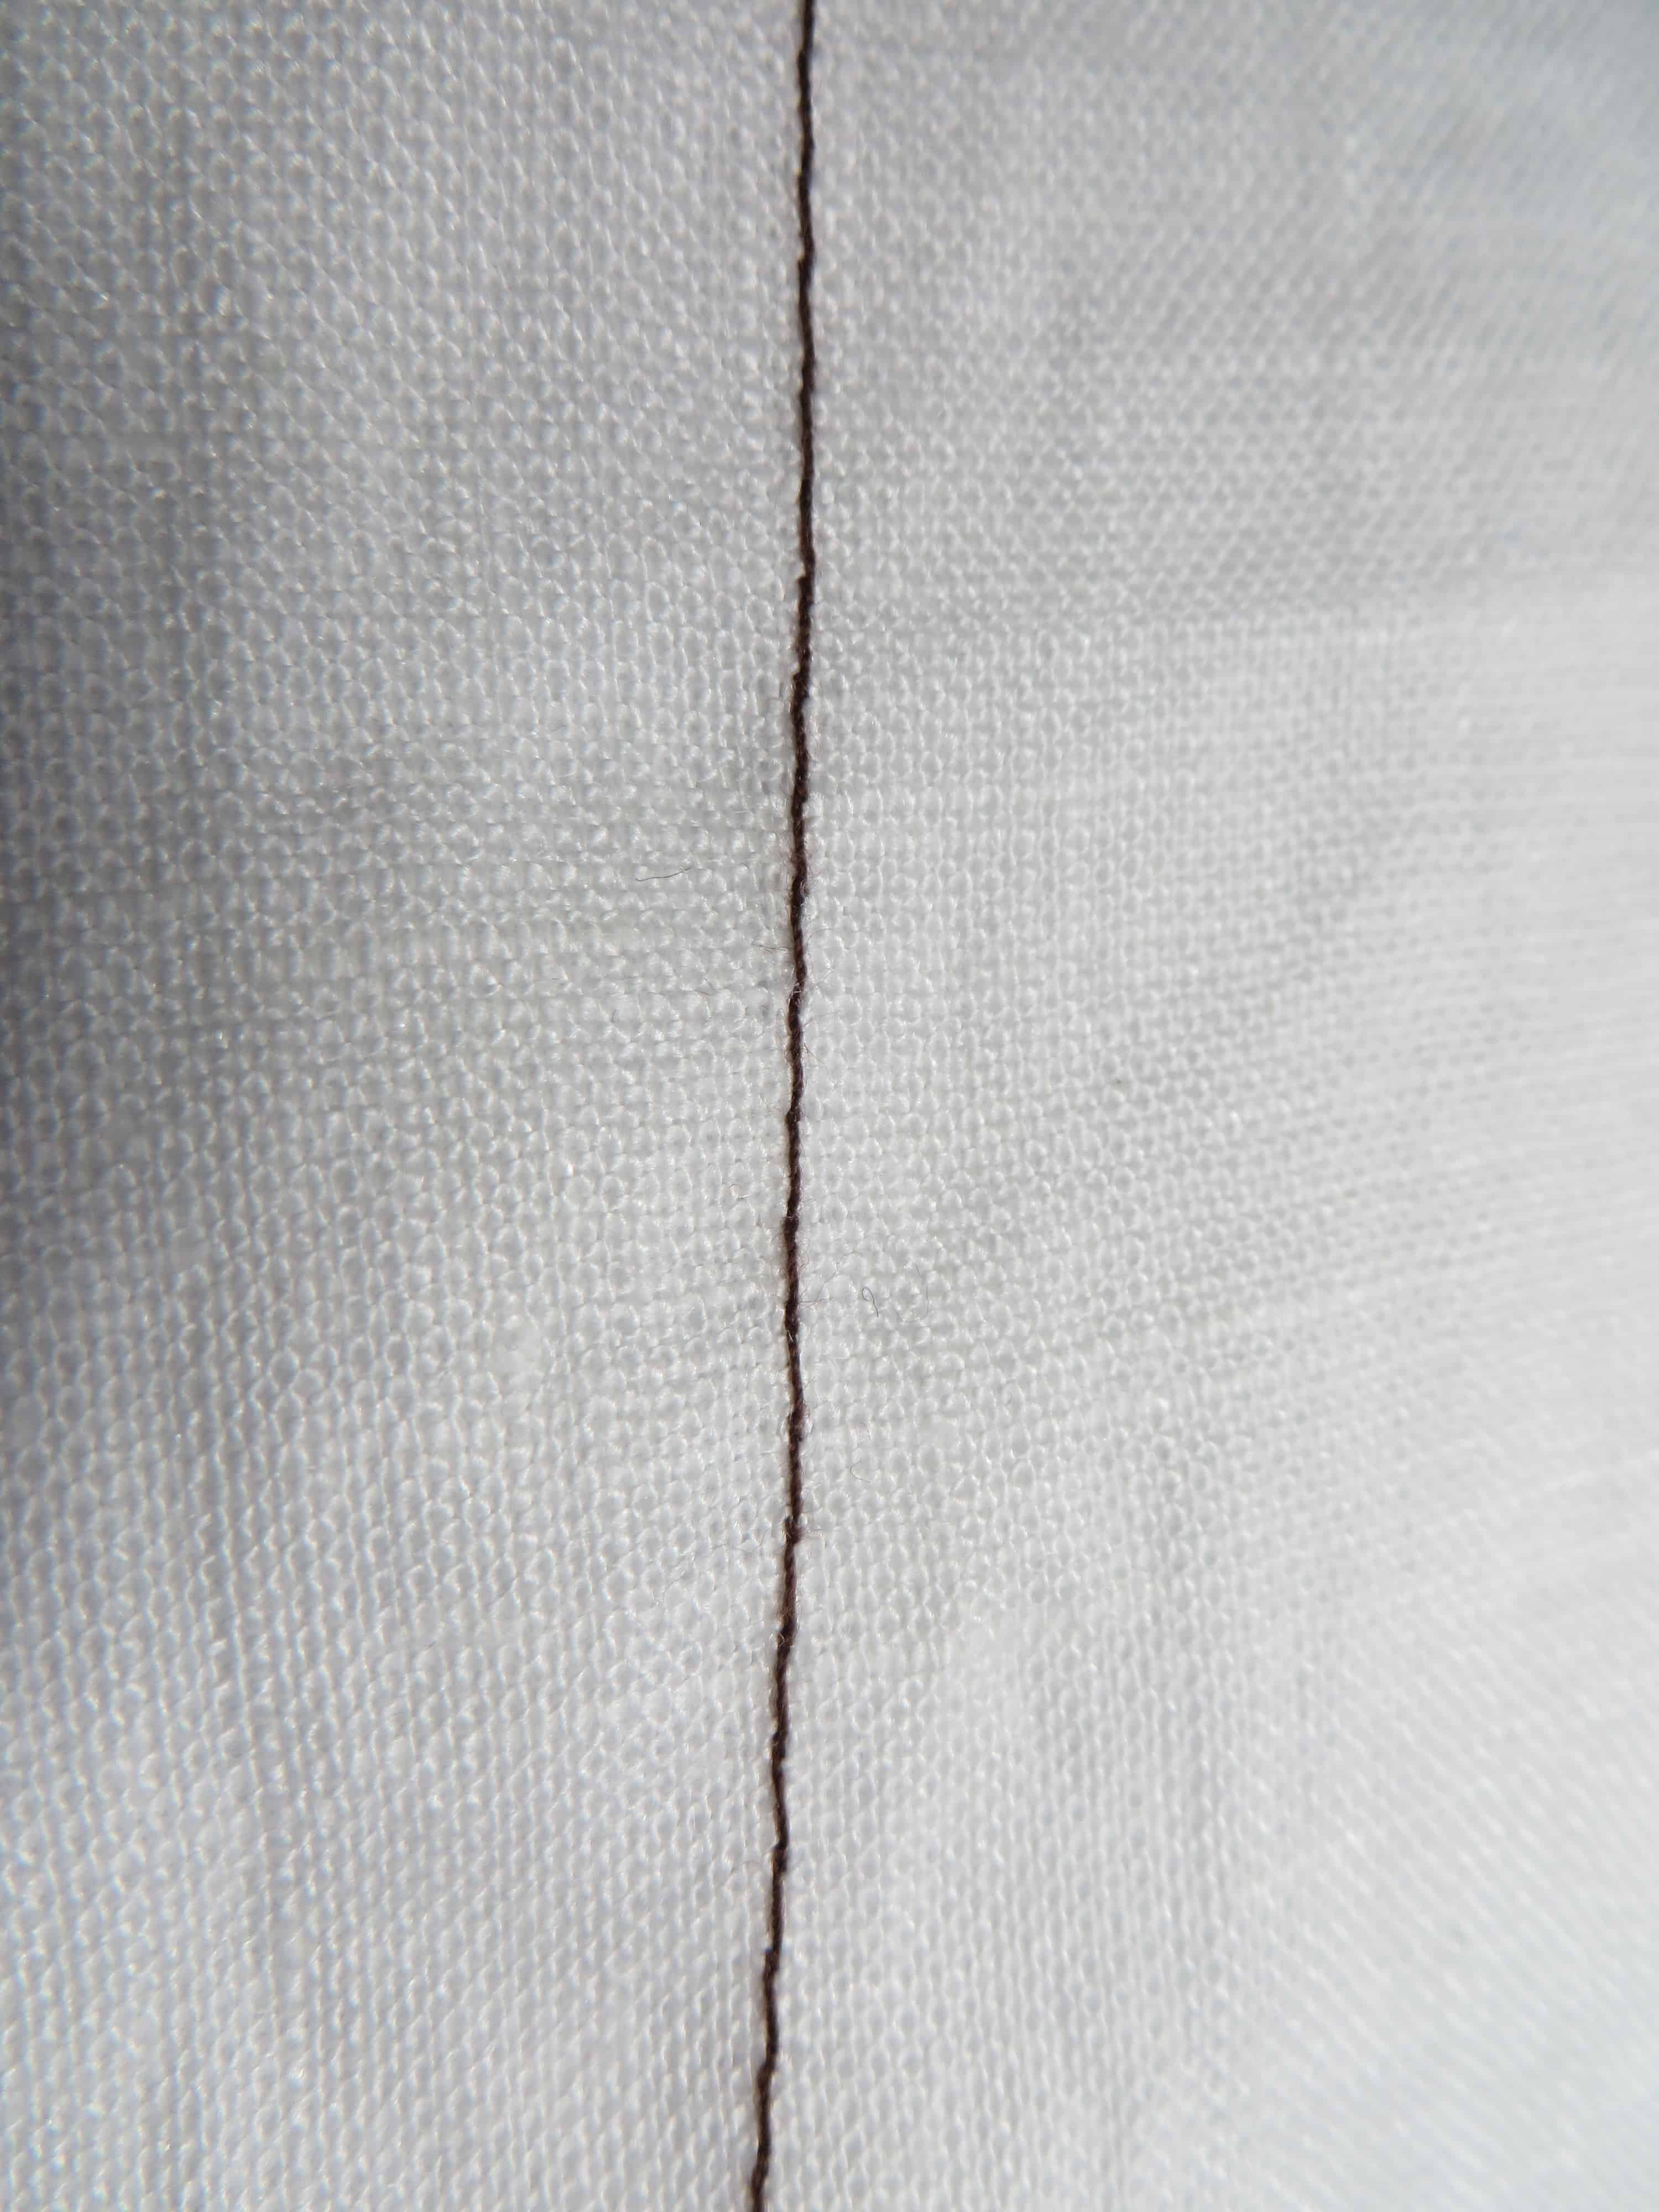 Single needle lock stitch back side